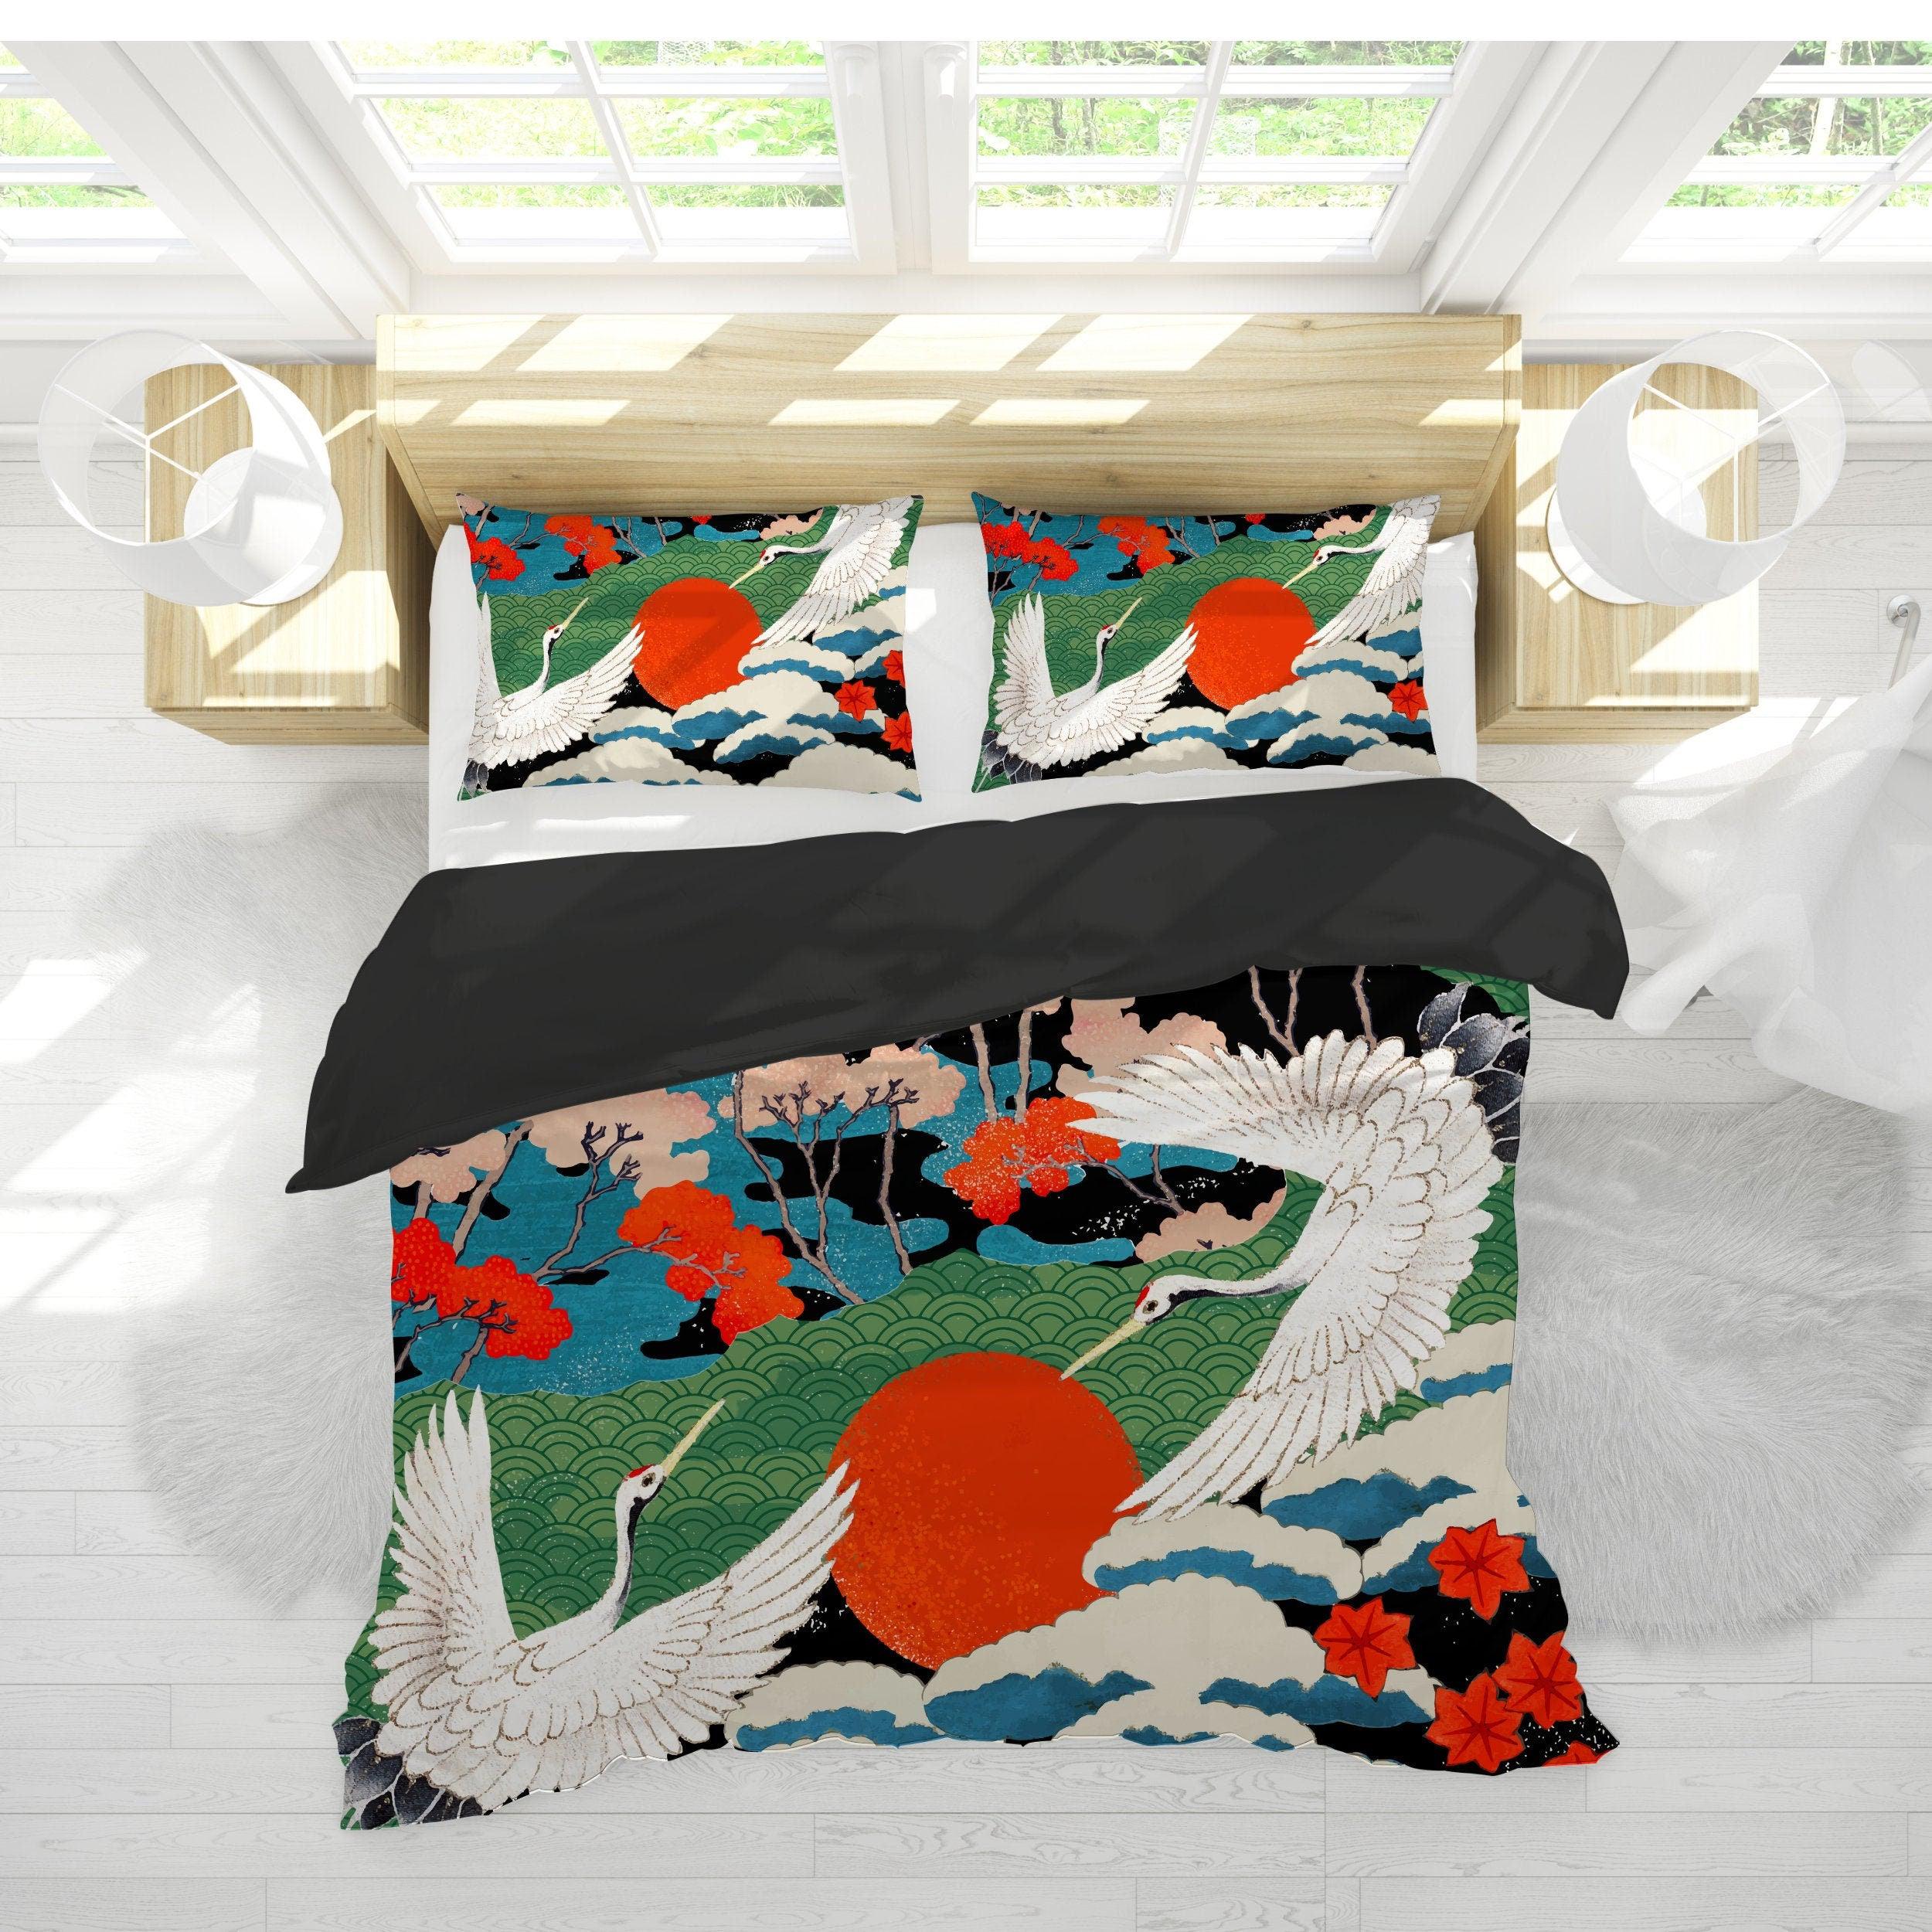 daintyduvet Japanese Art Duvet Cover Pillow Case Set | Dorm Bedding Set Full Painting Design